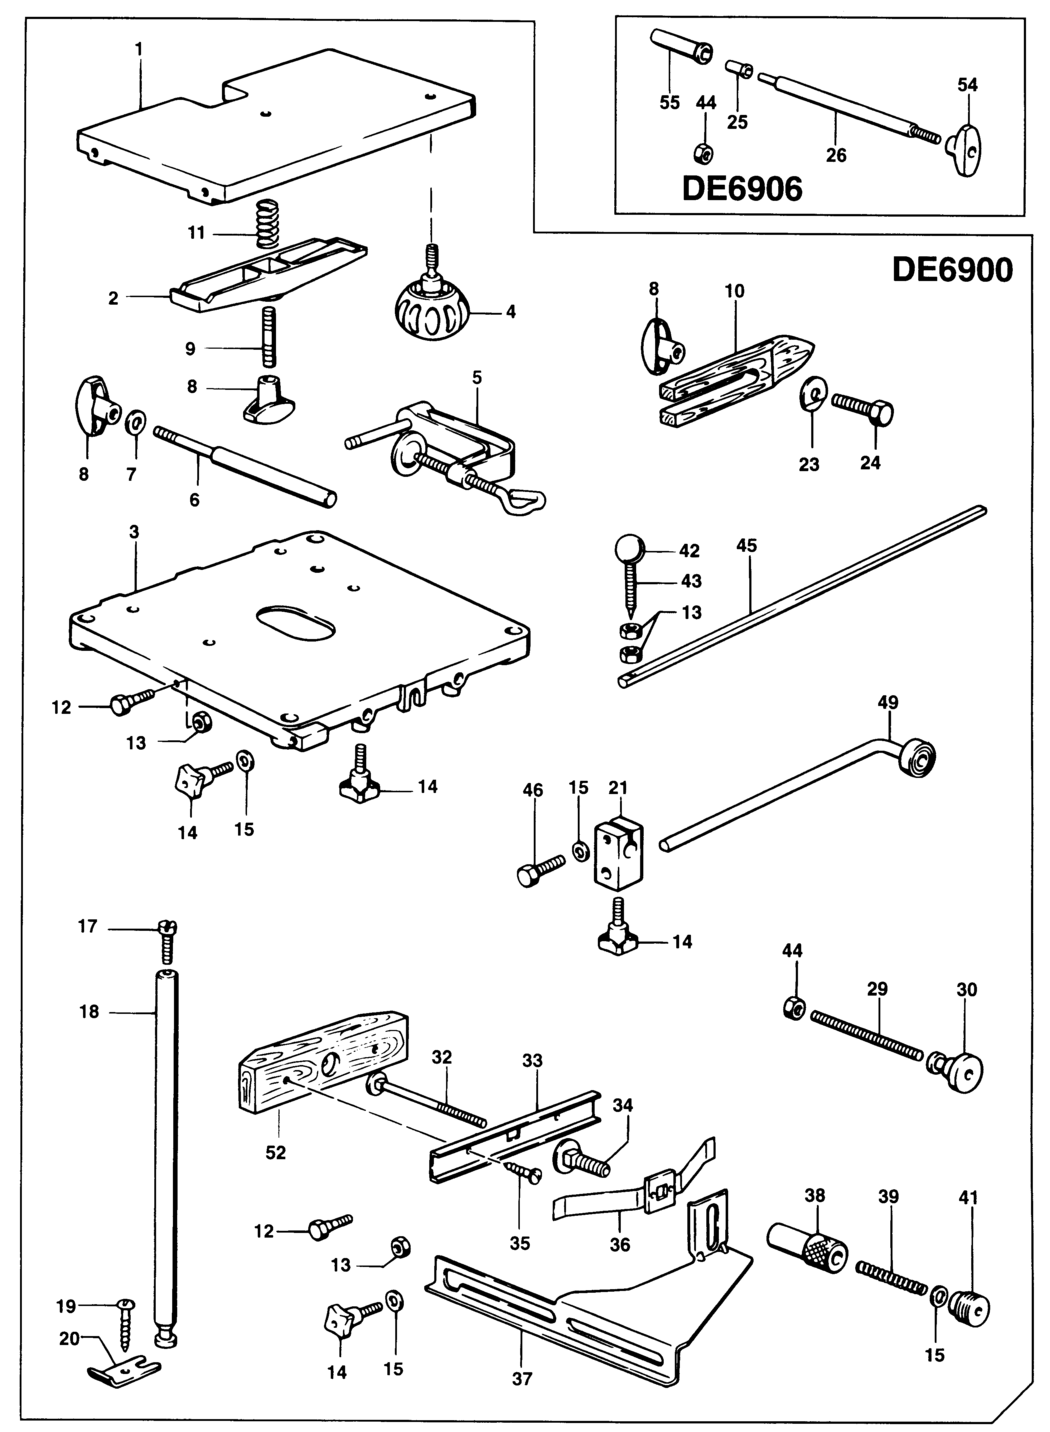 Dewalt DE6900 Type 1 Router Table Spare Parts